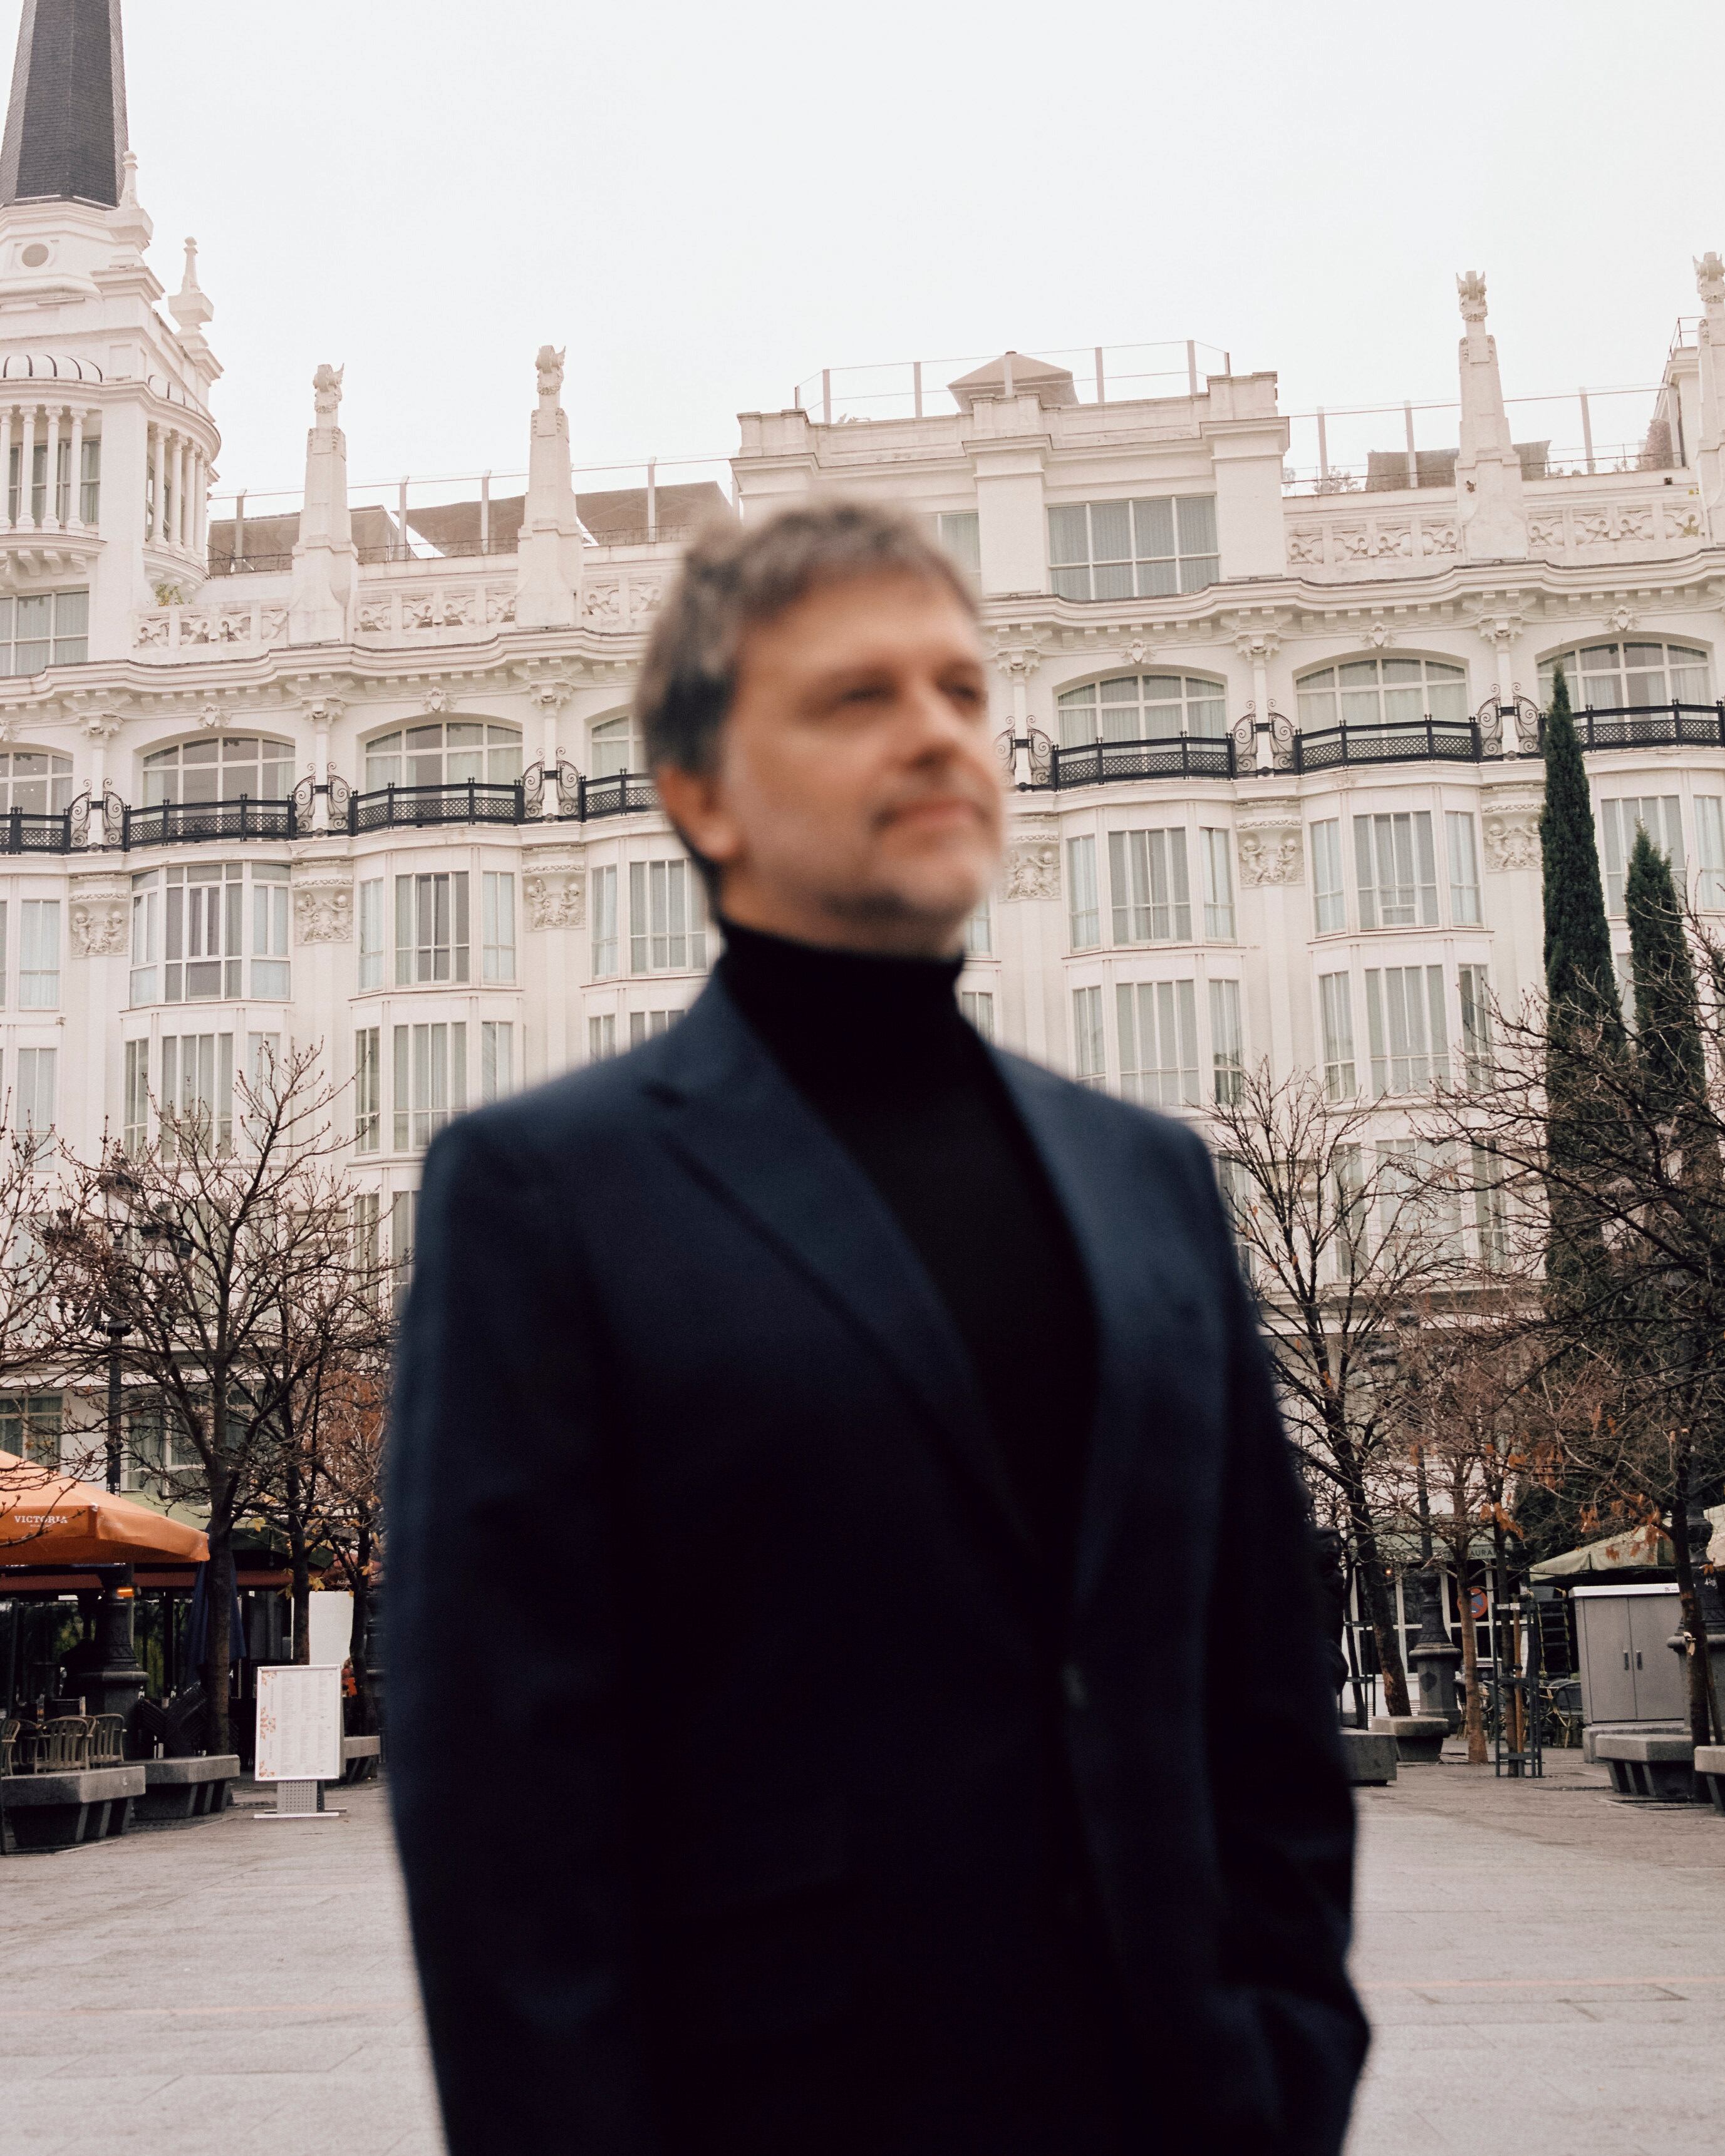 Juan Carlos Fresnadillo posa en exclusiva para ICON en la Plaza de Santa Ana, Madrid.